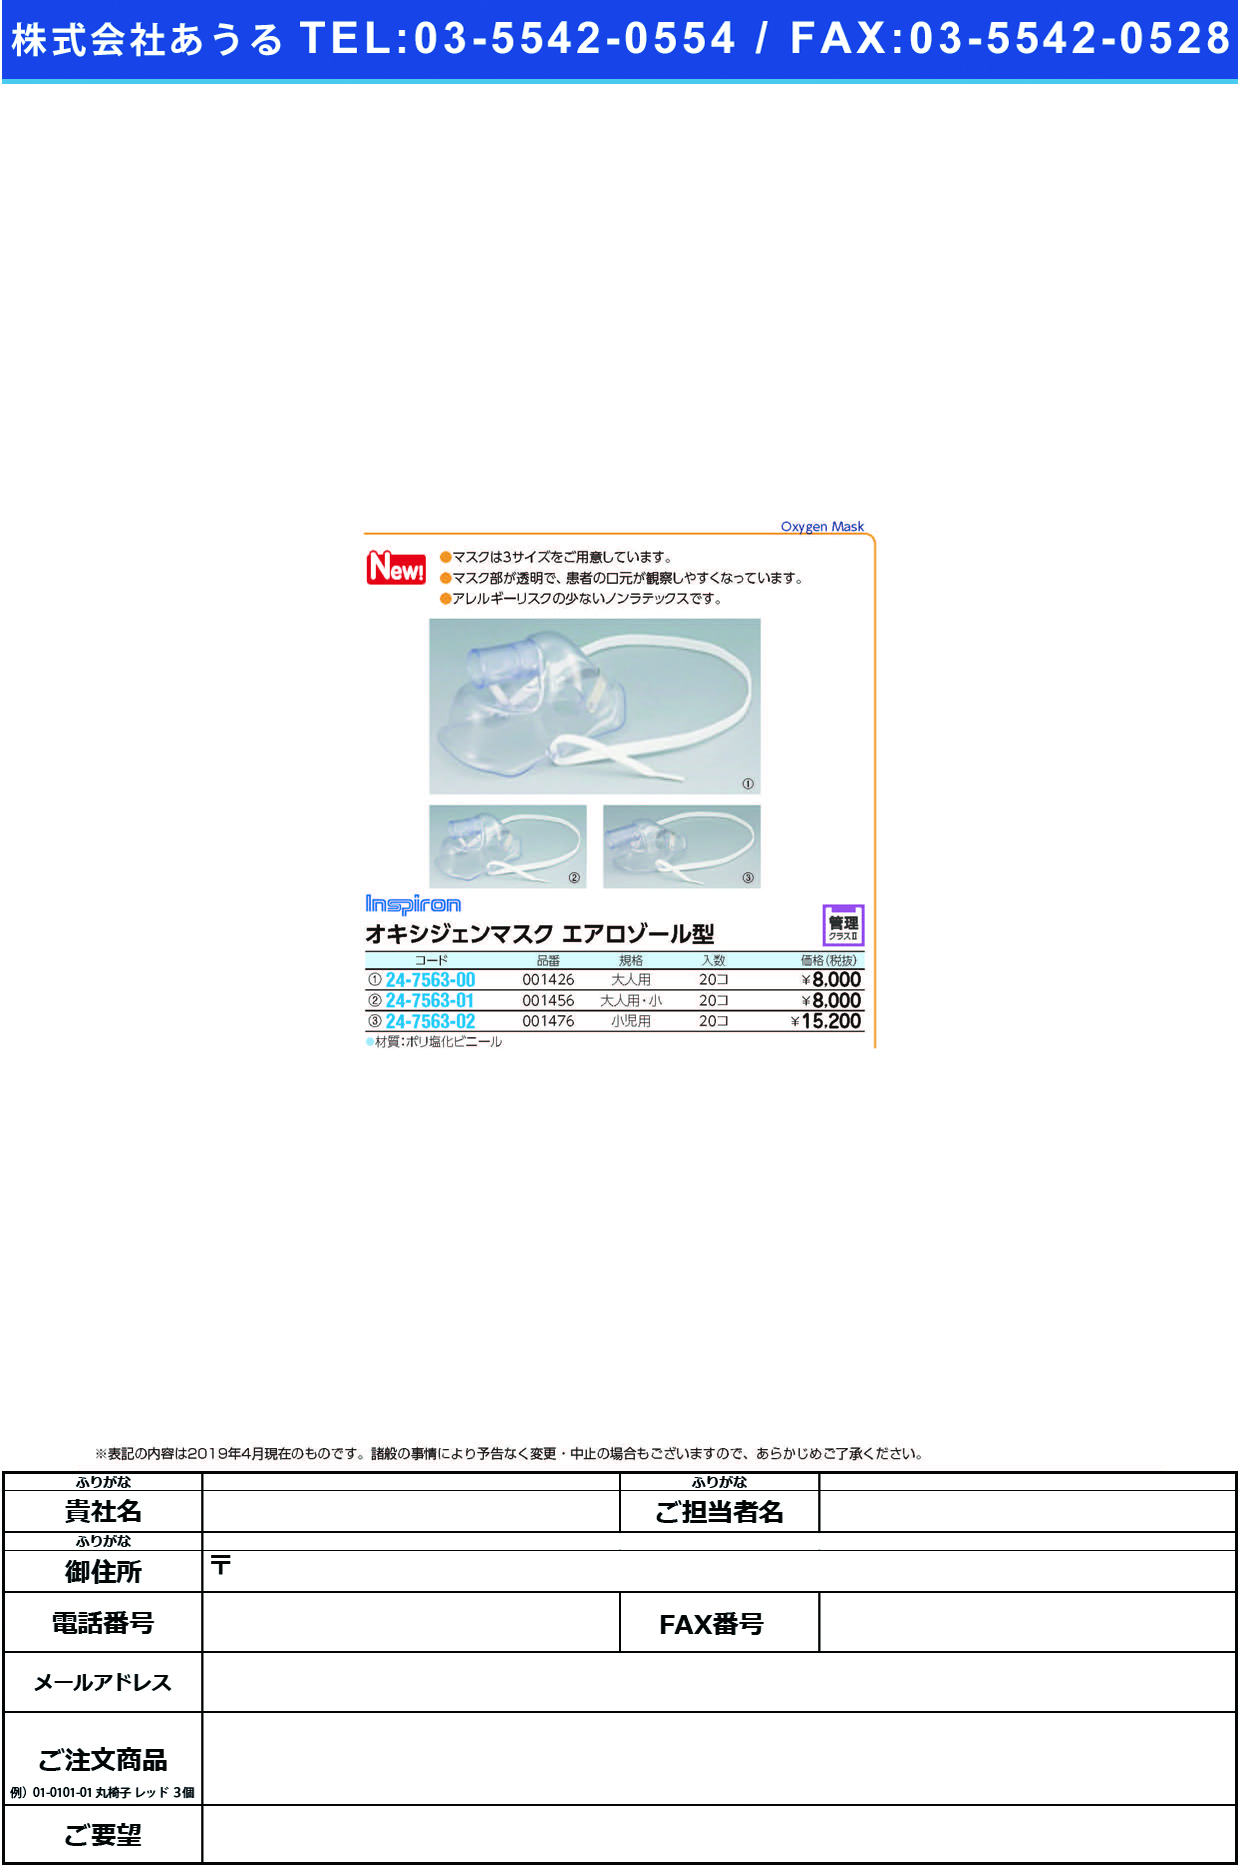 (24-7563-00)オキシジェンマスクエアロゾール型001426(ｵﾄﾅﾖｳ)20ｺｲﾘ ｵｷｼｼﾞｪﾝﾏｽｸｴｱﾛｿﾞｰﾙｶﾞﾀ(日本メディカルネクスト)【1箱単位】【2019年カタログ商品】